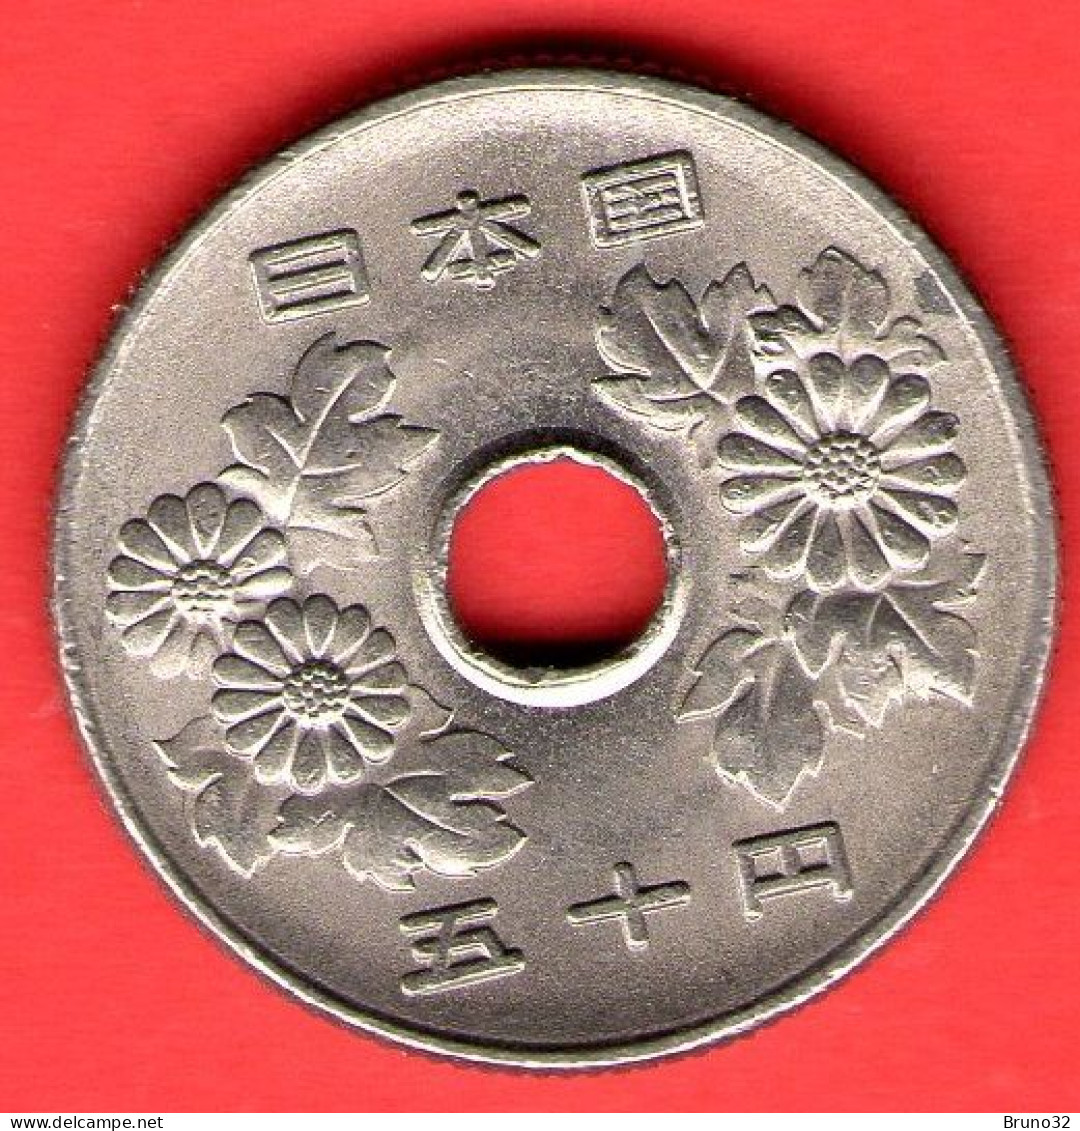 Giappone - Japan - Japon - 50 Yen (7) - QFDC/aUNC - Come Da Foto - Japon